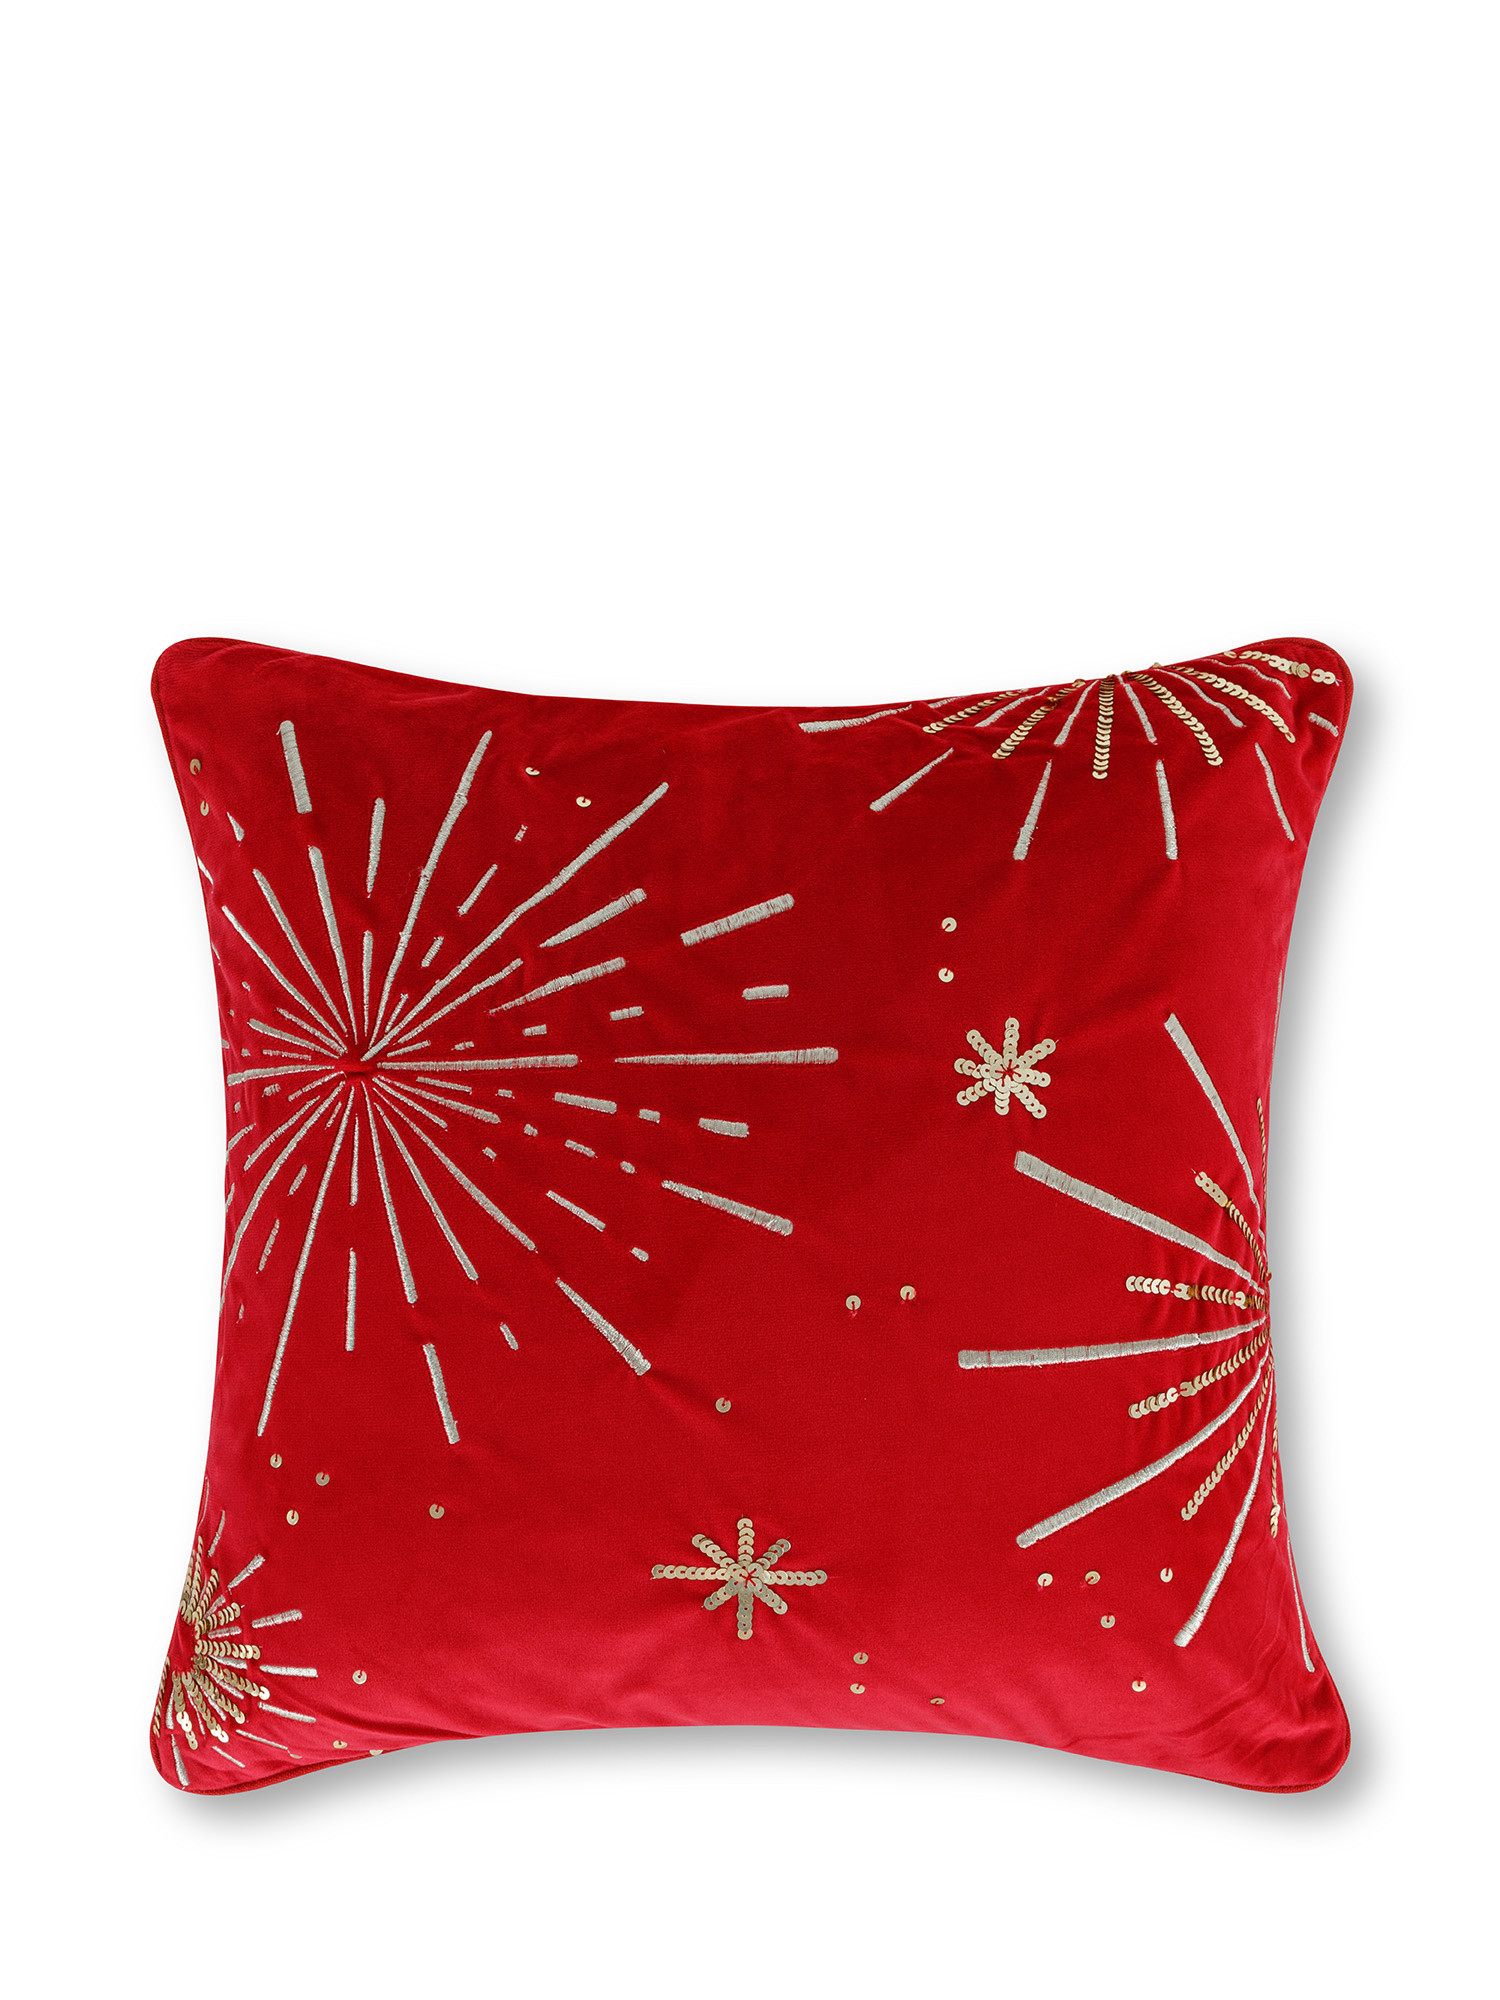 Cuscino in velluto con ricamo fuochi d'artificio in rilievo 45x45 cm, Rosso, large image number 0